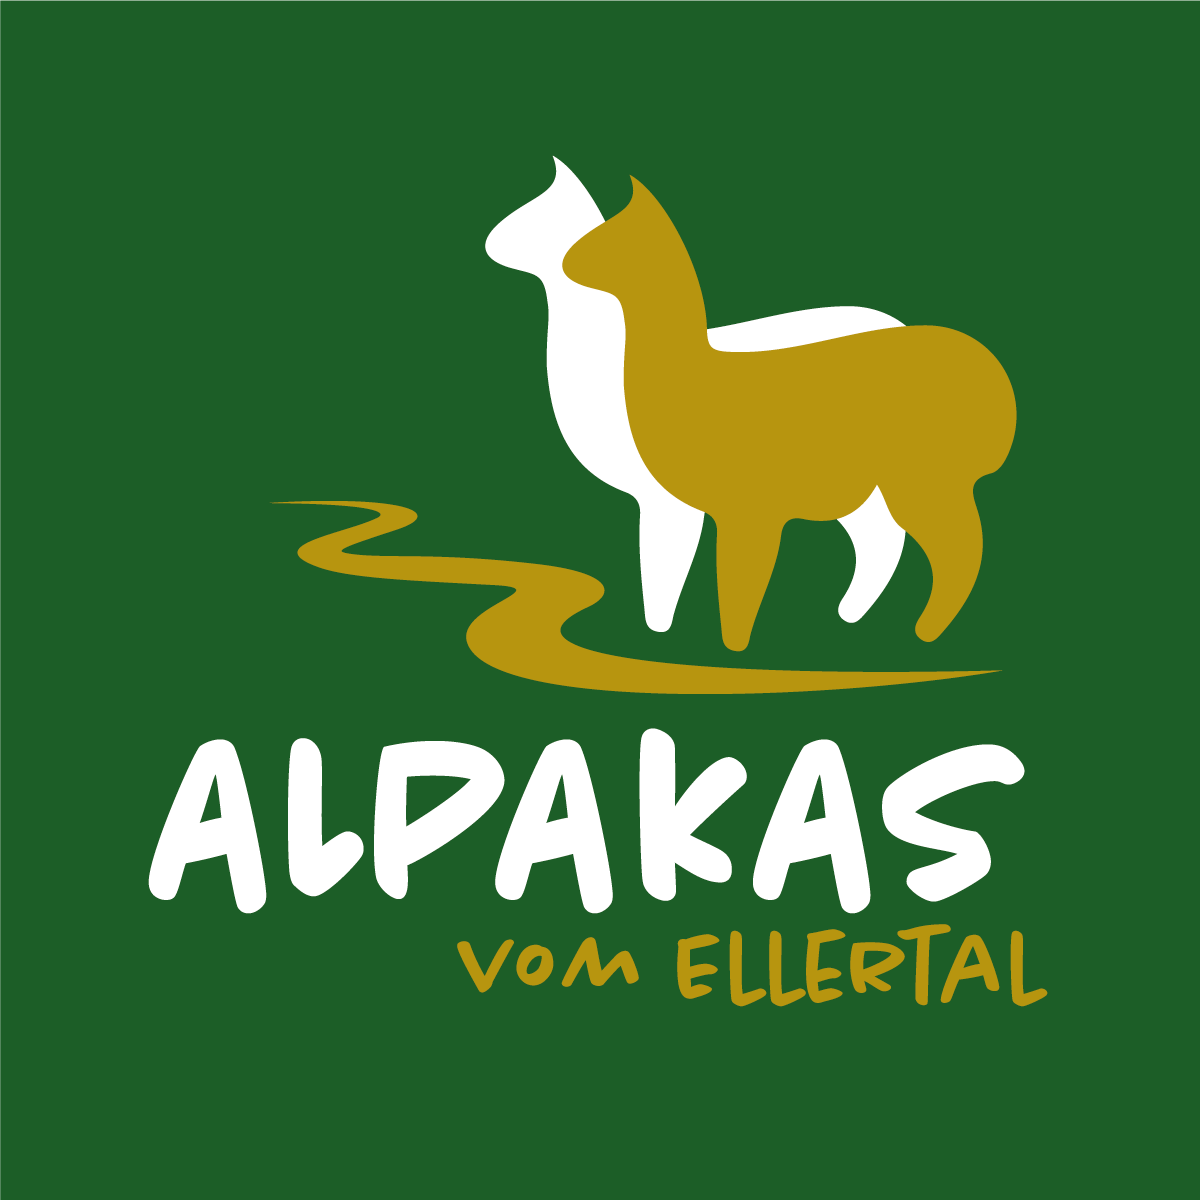 Alpakas vom Ellertal